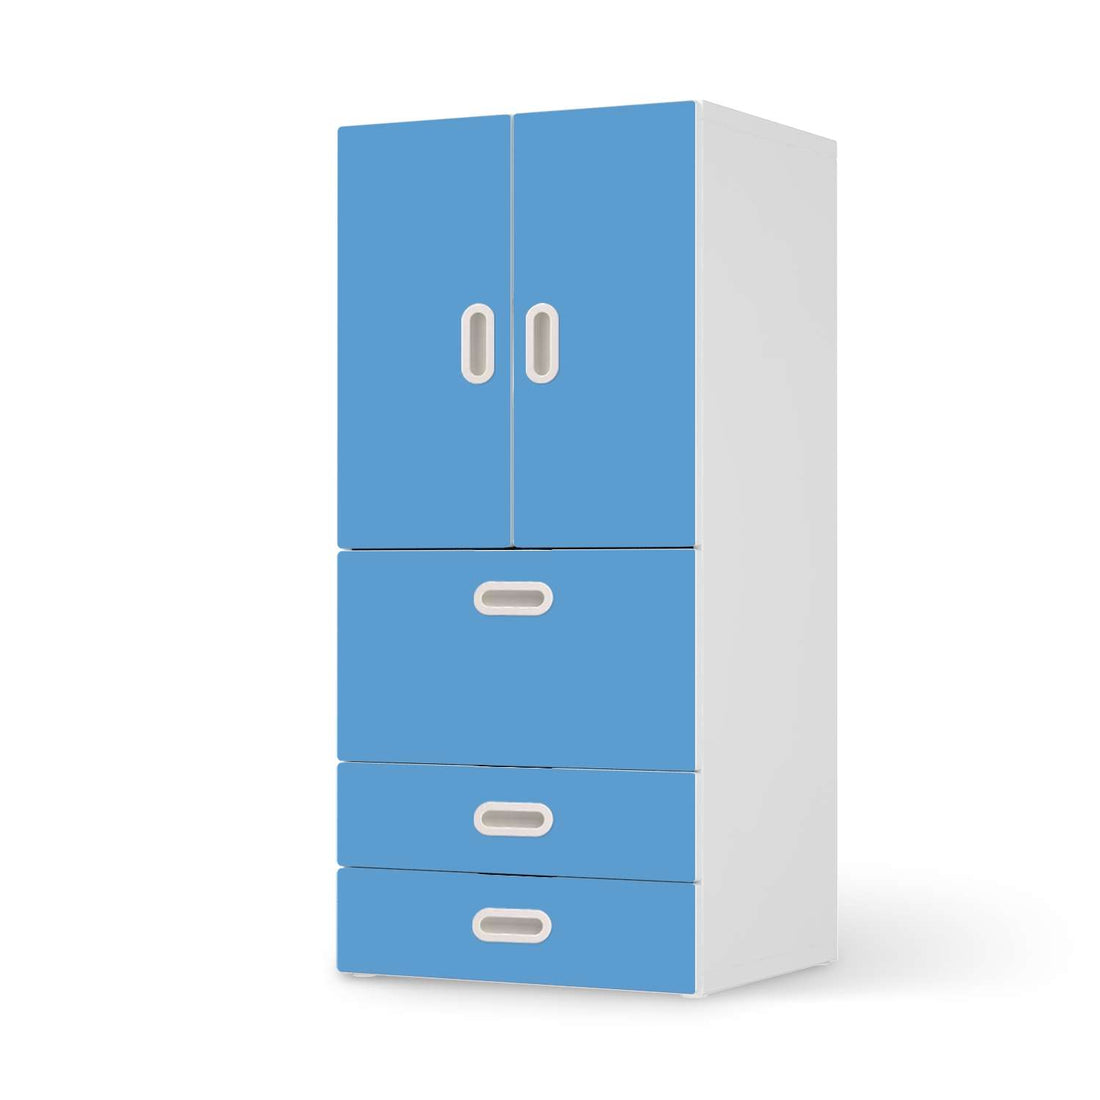 Möbelfolie Blau Light - IKEA Stuva / Fritids kombiniert - 3 Schubladen und 2 kleine Türen  - weiss